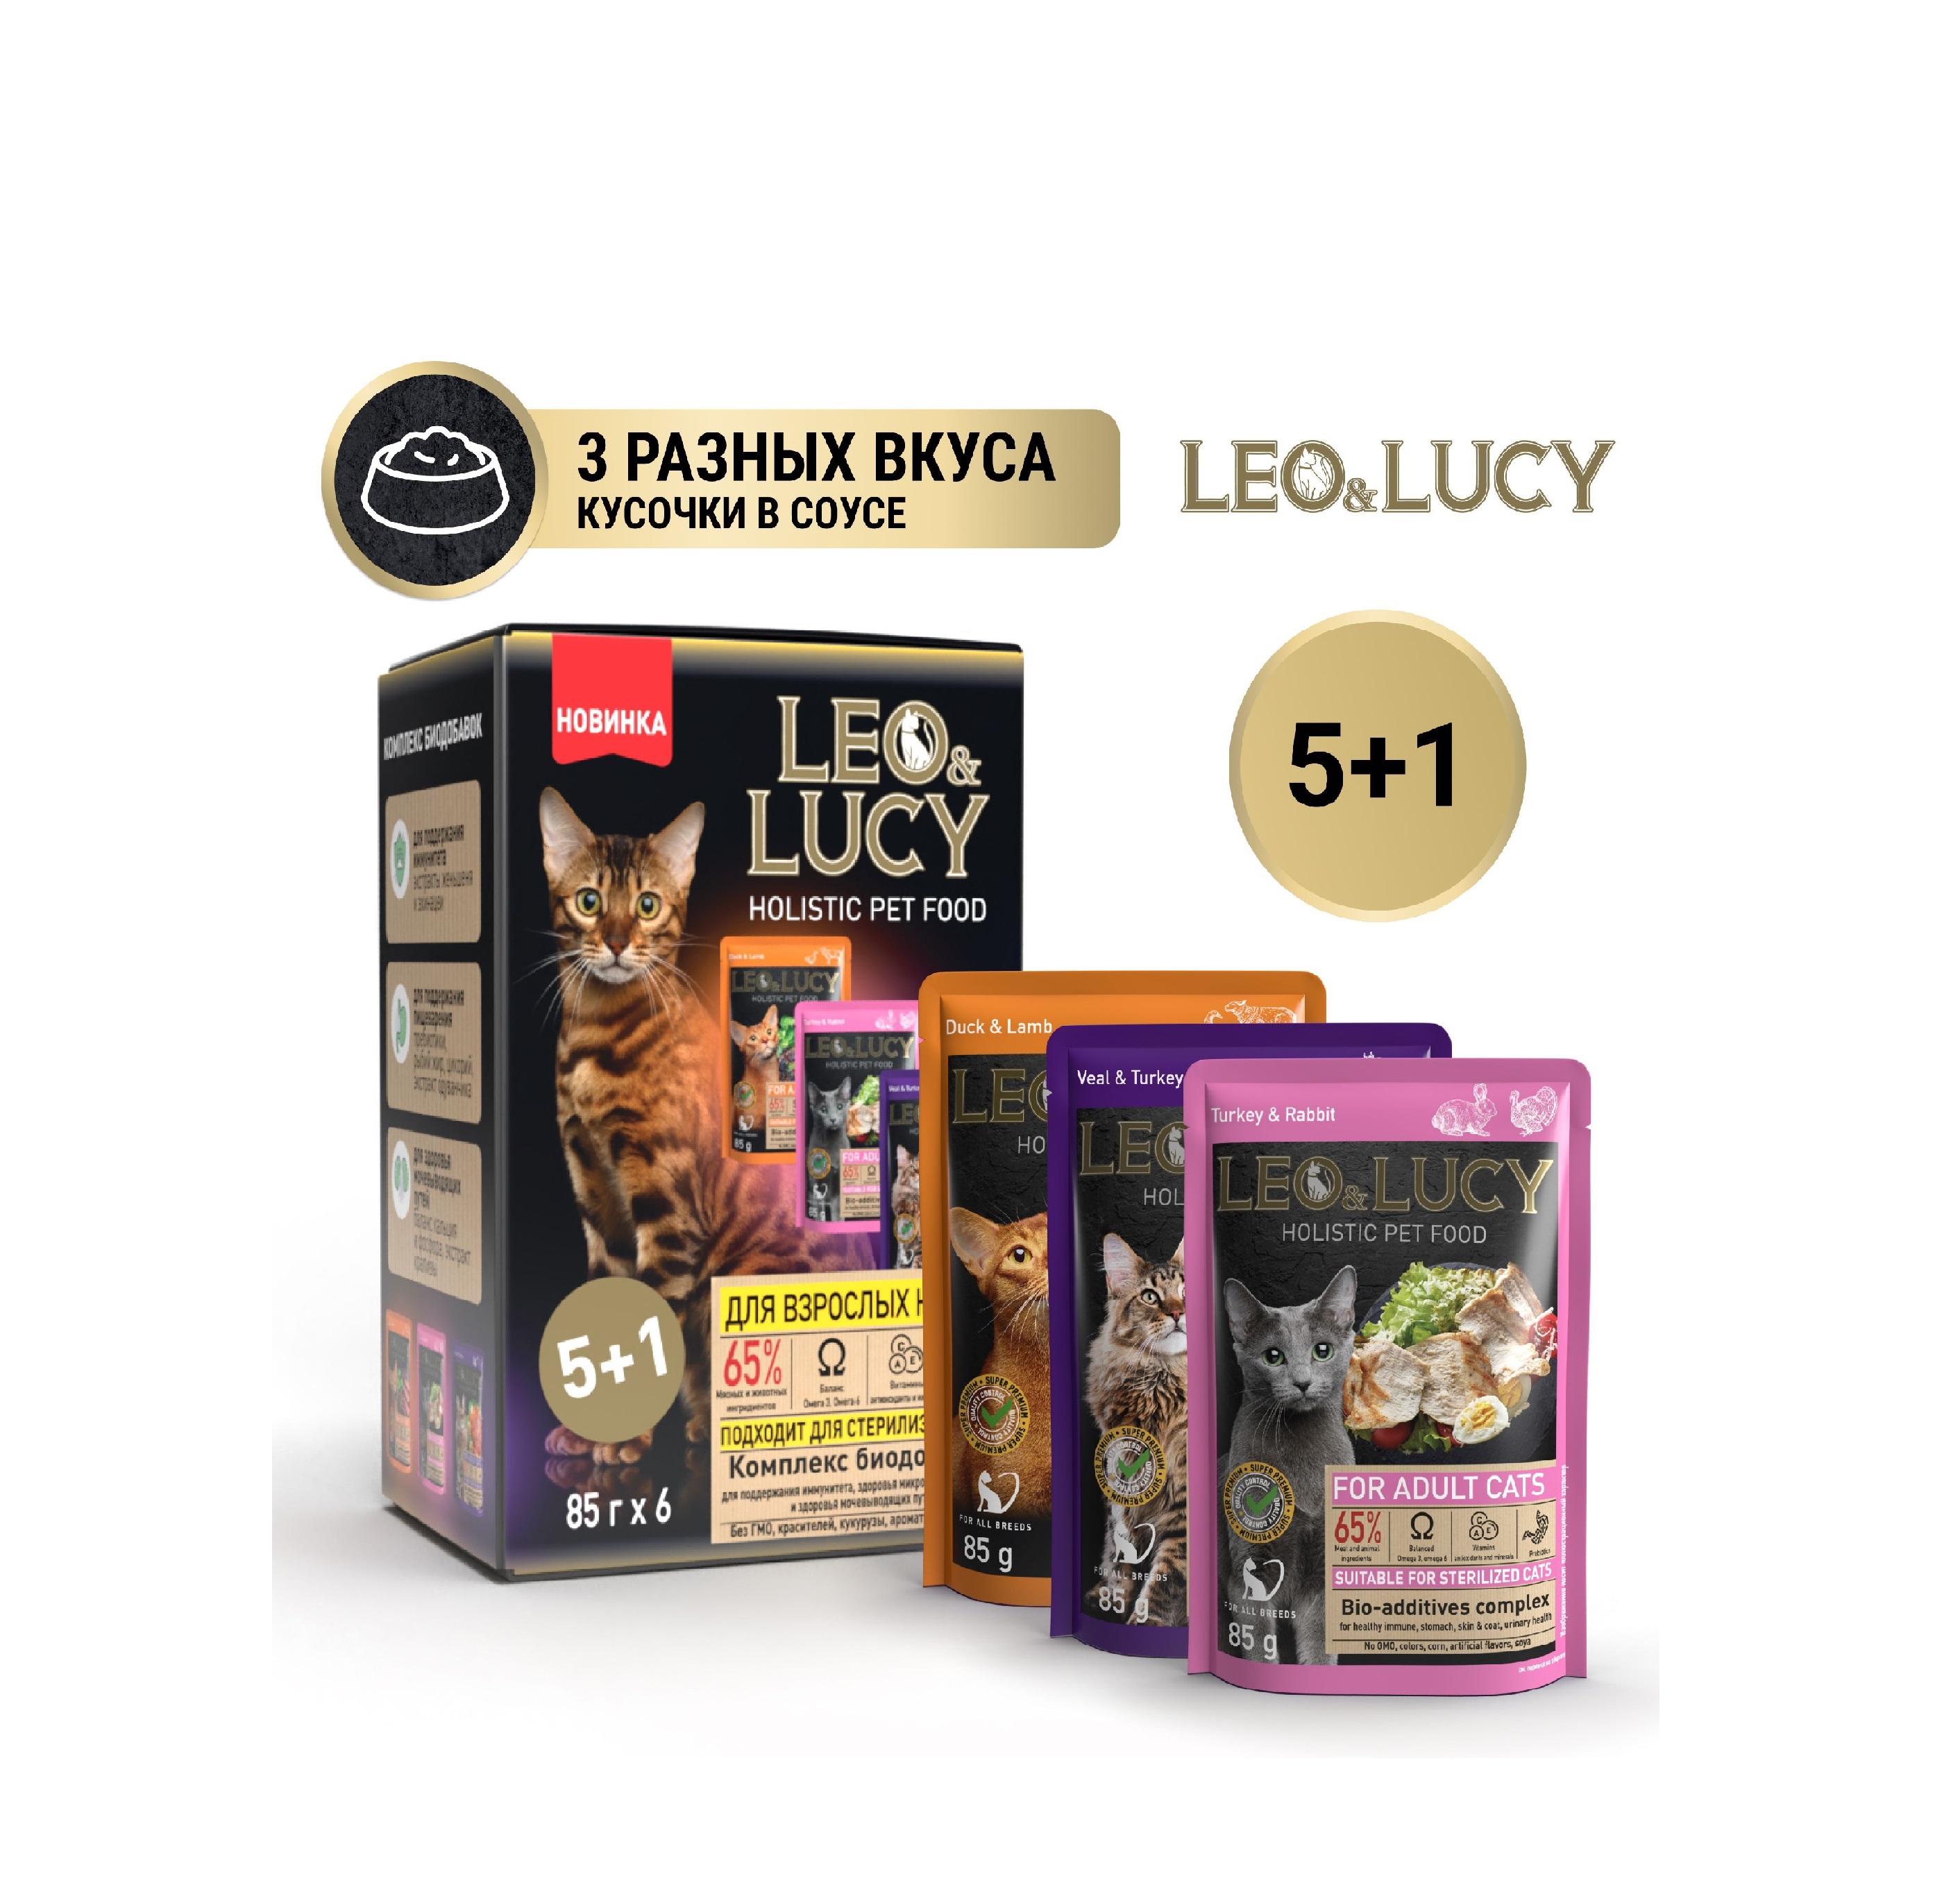 Лео&Люси 85гр - Кусочки в соусе - Набор 5+1 (Leo&Lucy)